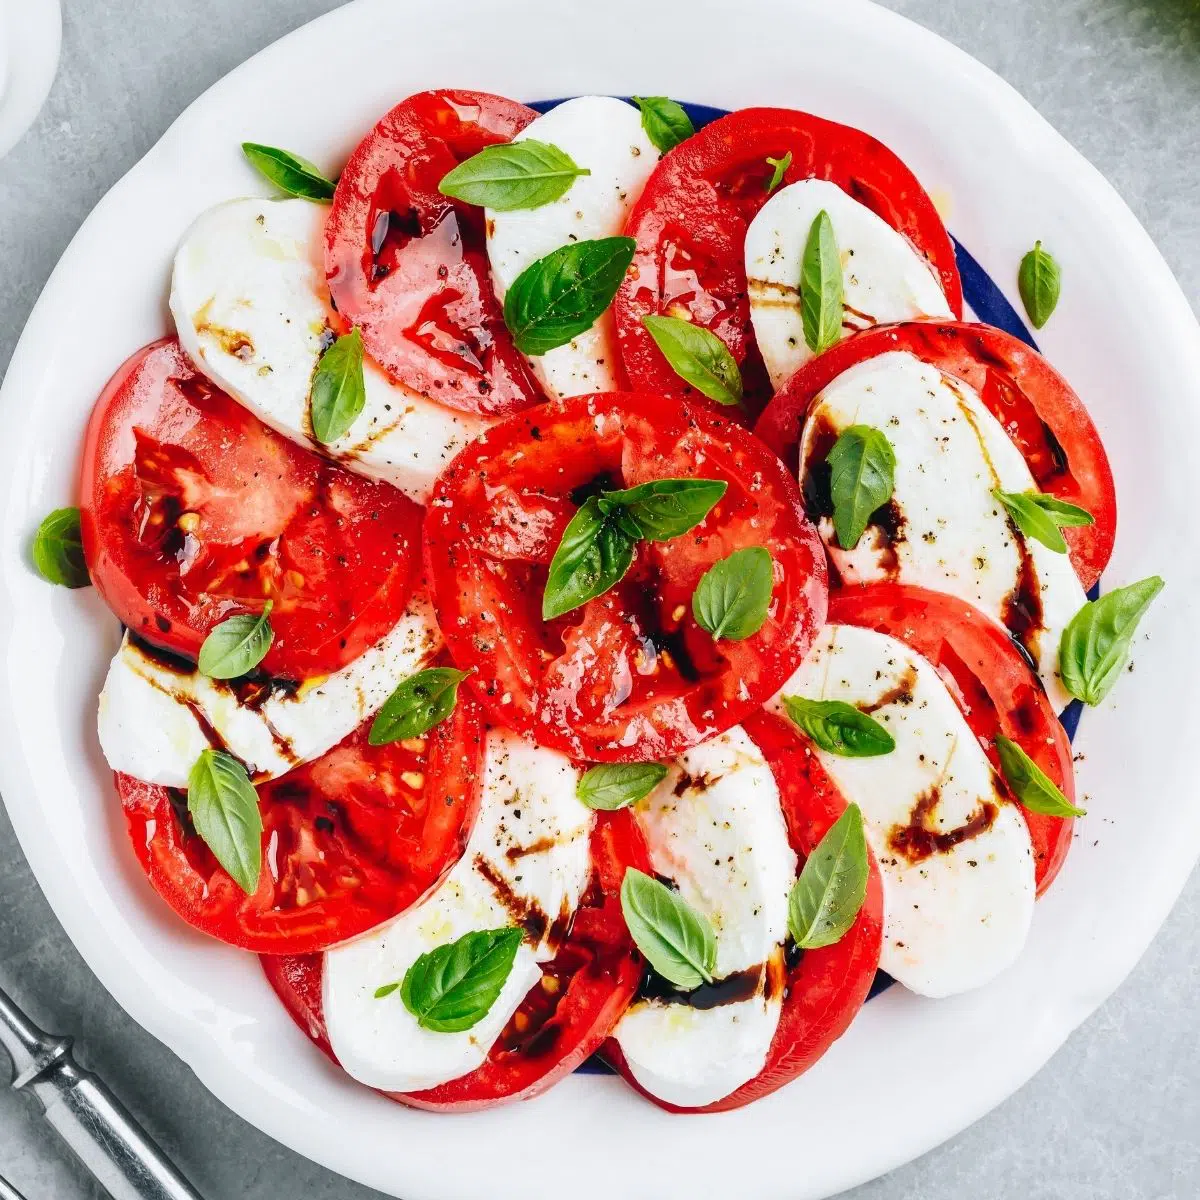 De beste caprese-salade wordt geserveerd terwijl de tomaten, mozzarella en basilicum vers en levendig zijn.